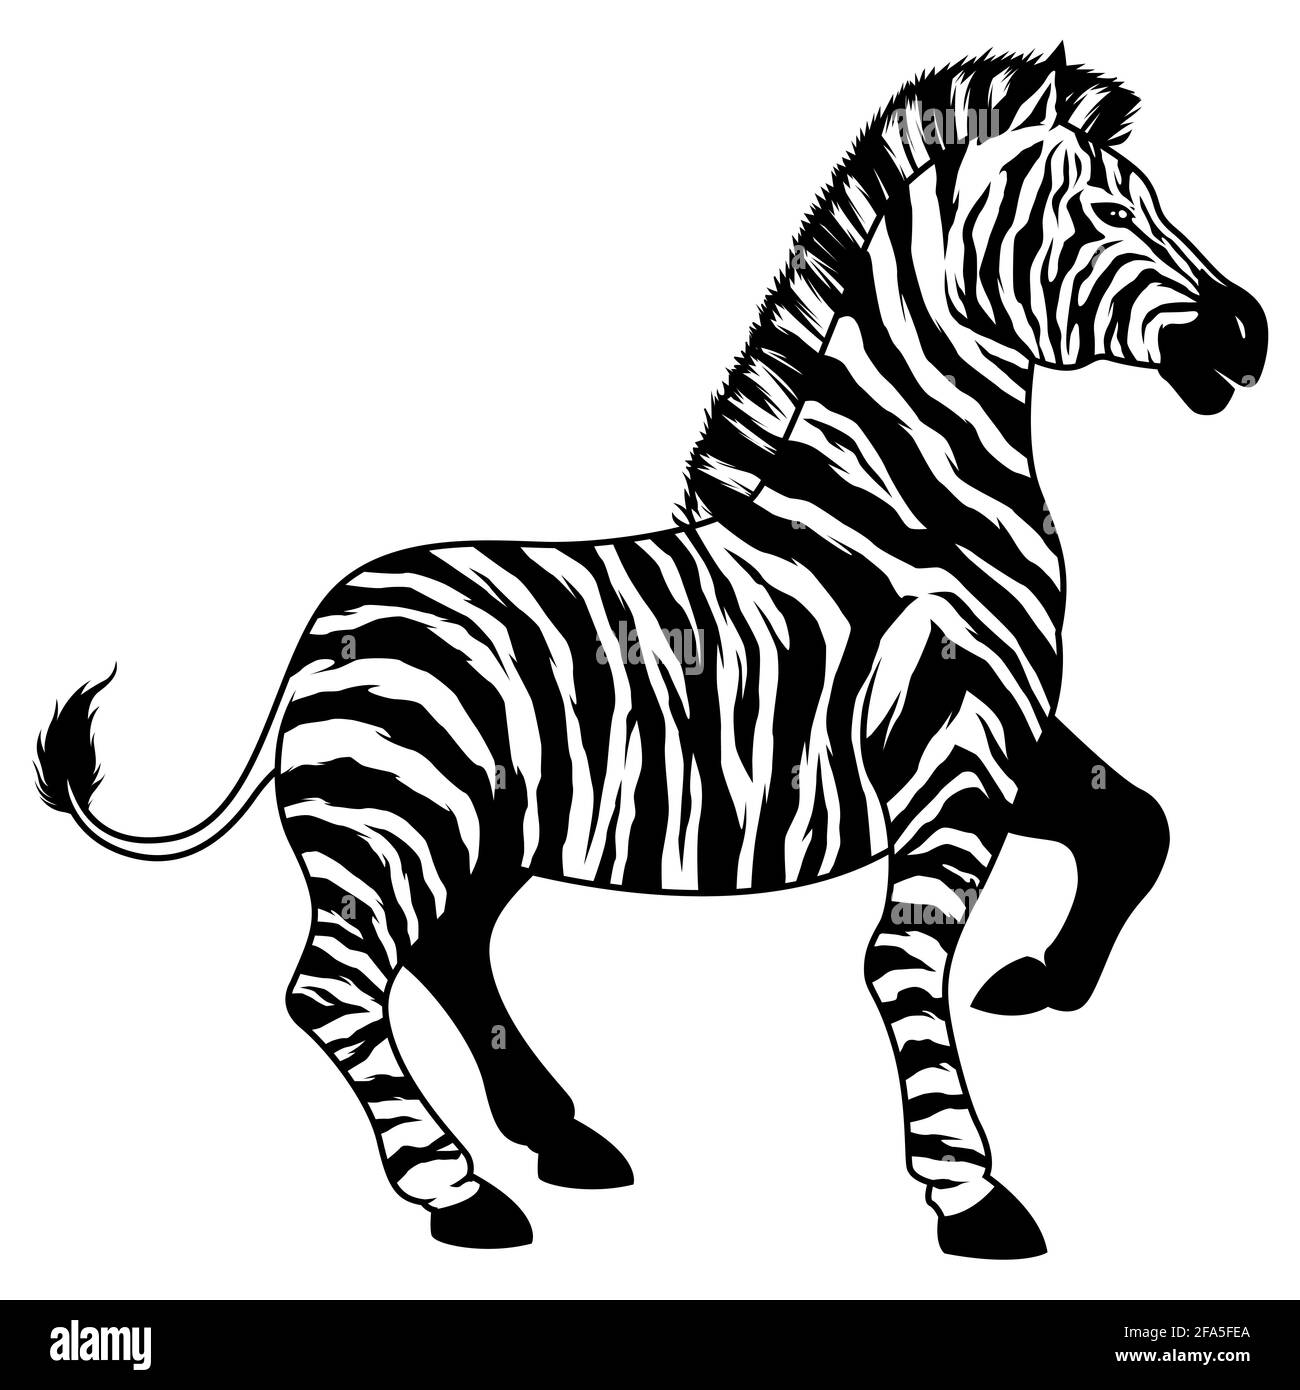 Zebra on White Stock Vector